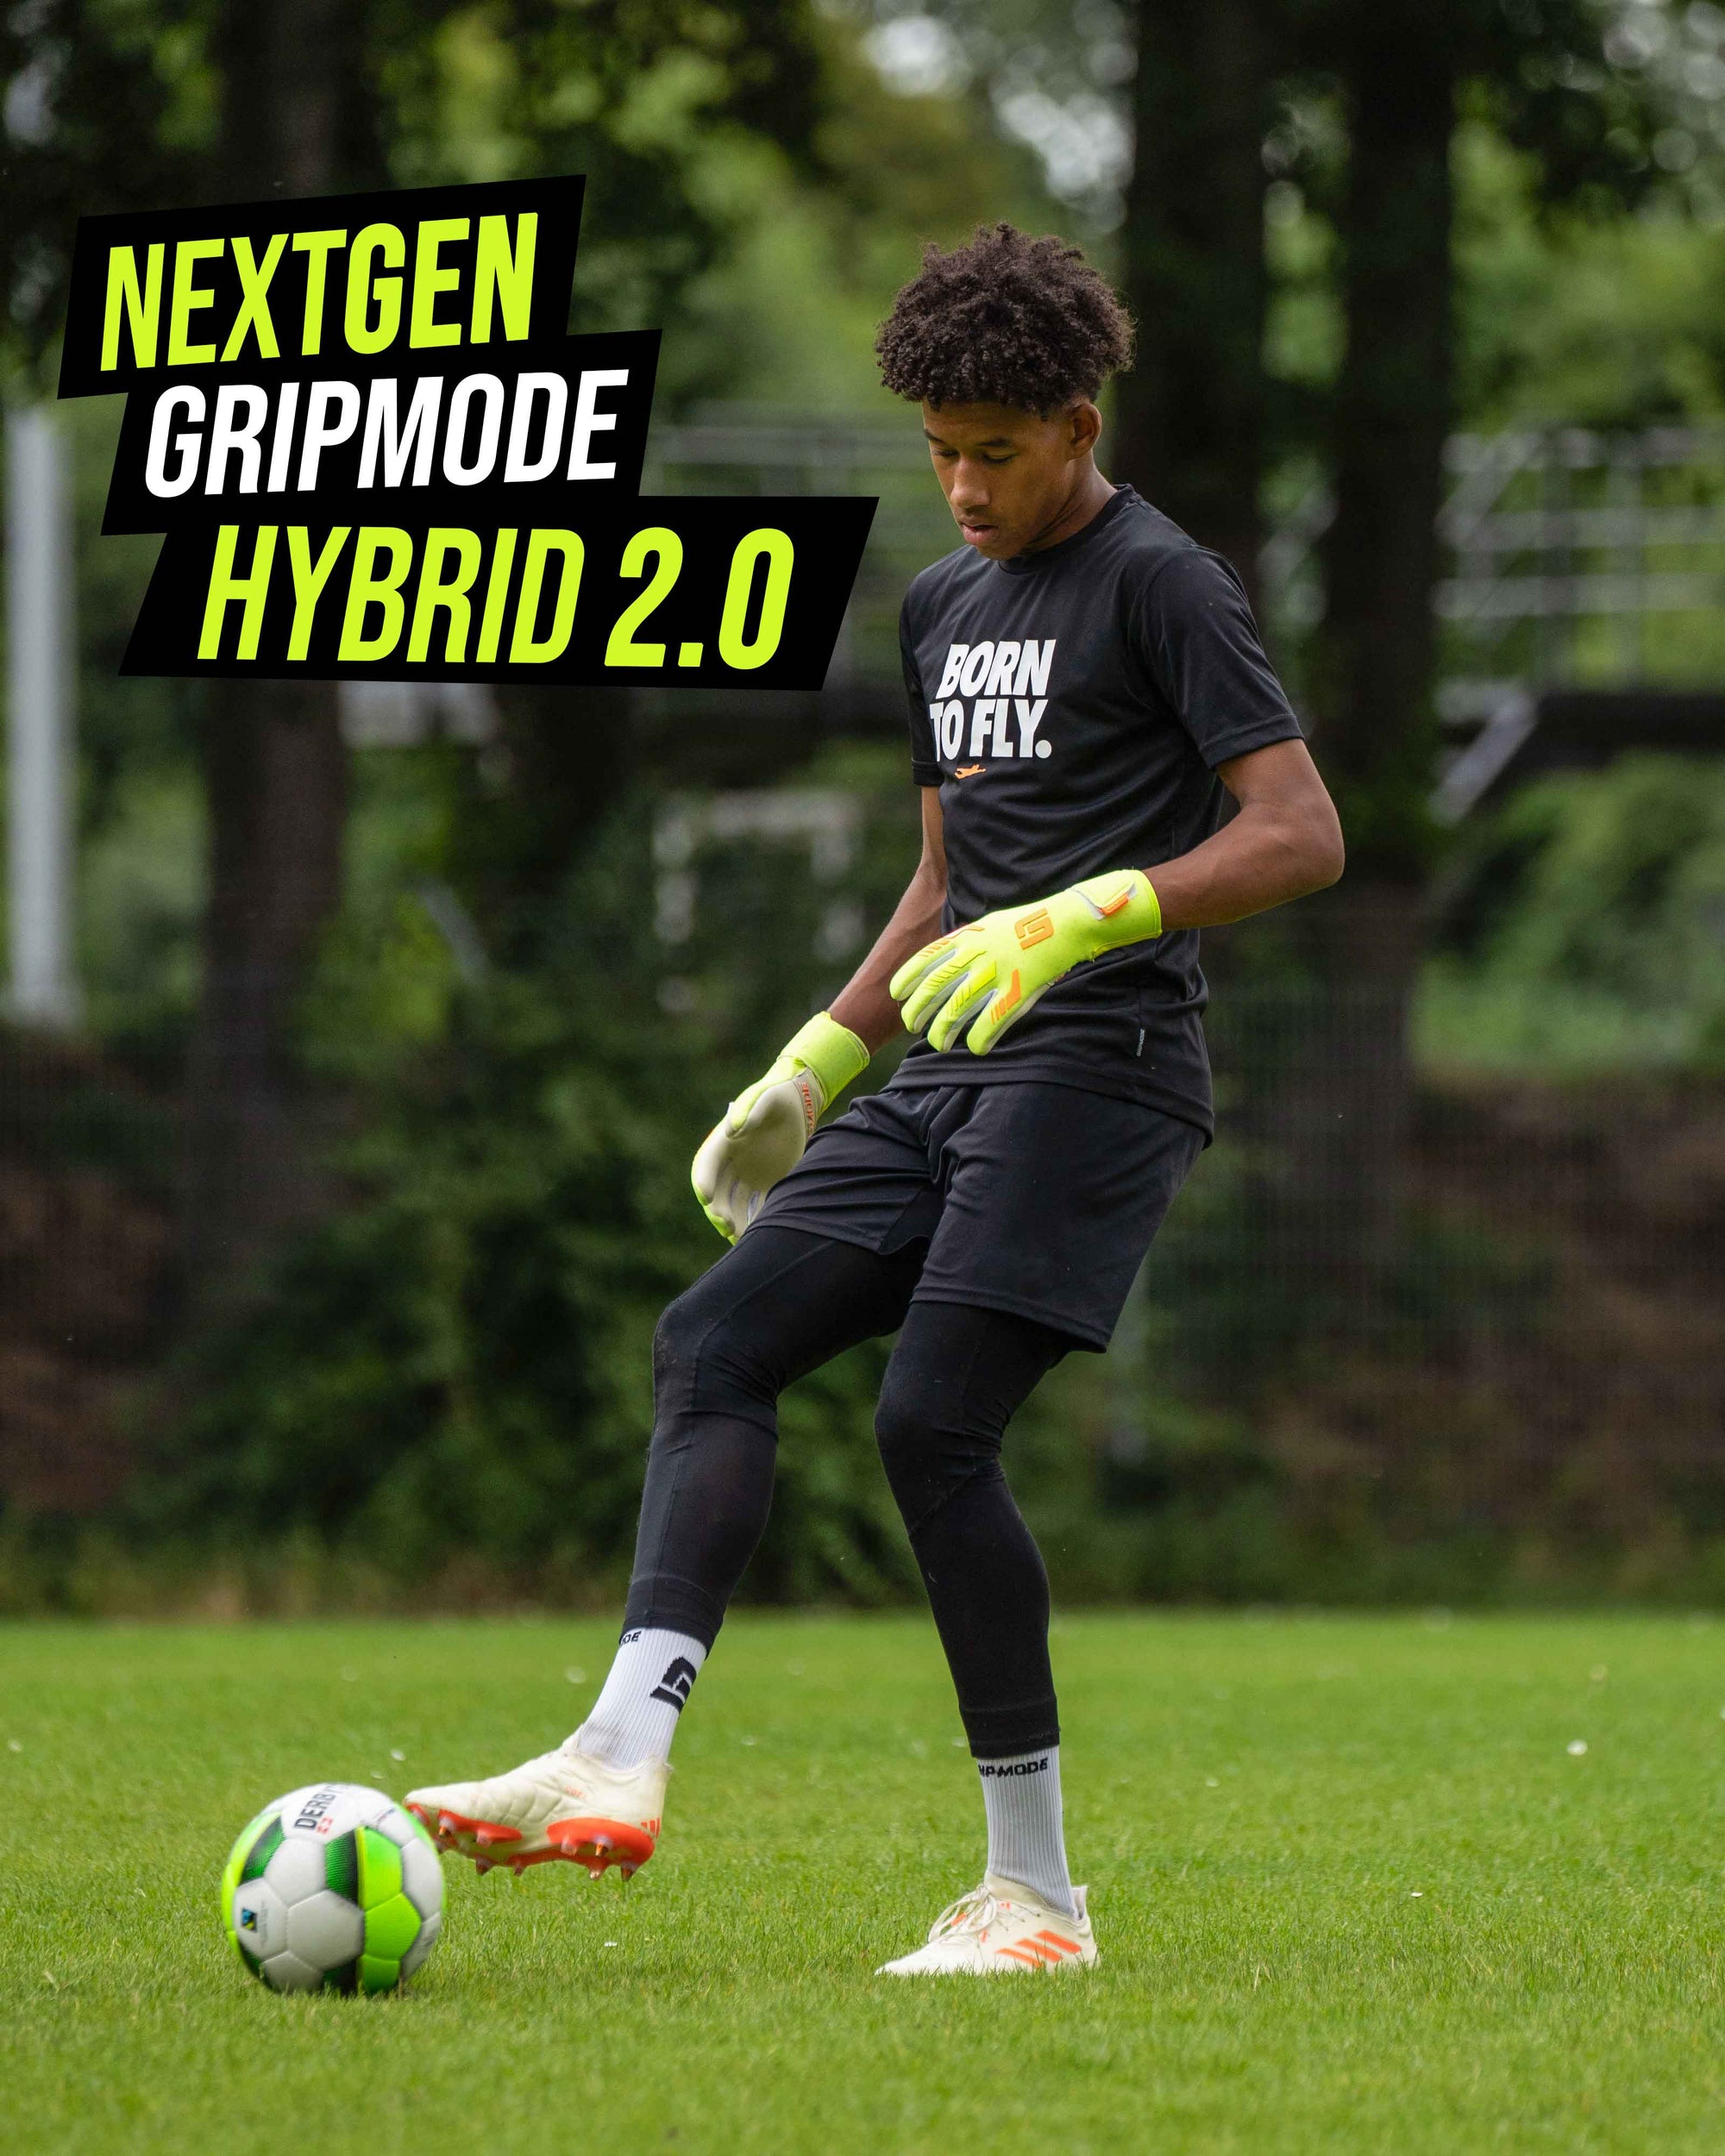 Gripmode Venom Hybrid 2.0 Goalkeeper gloves for soccer and football